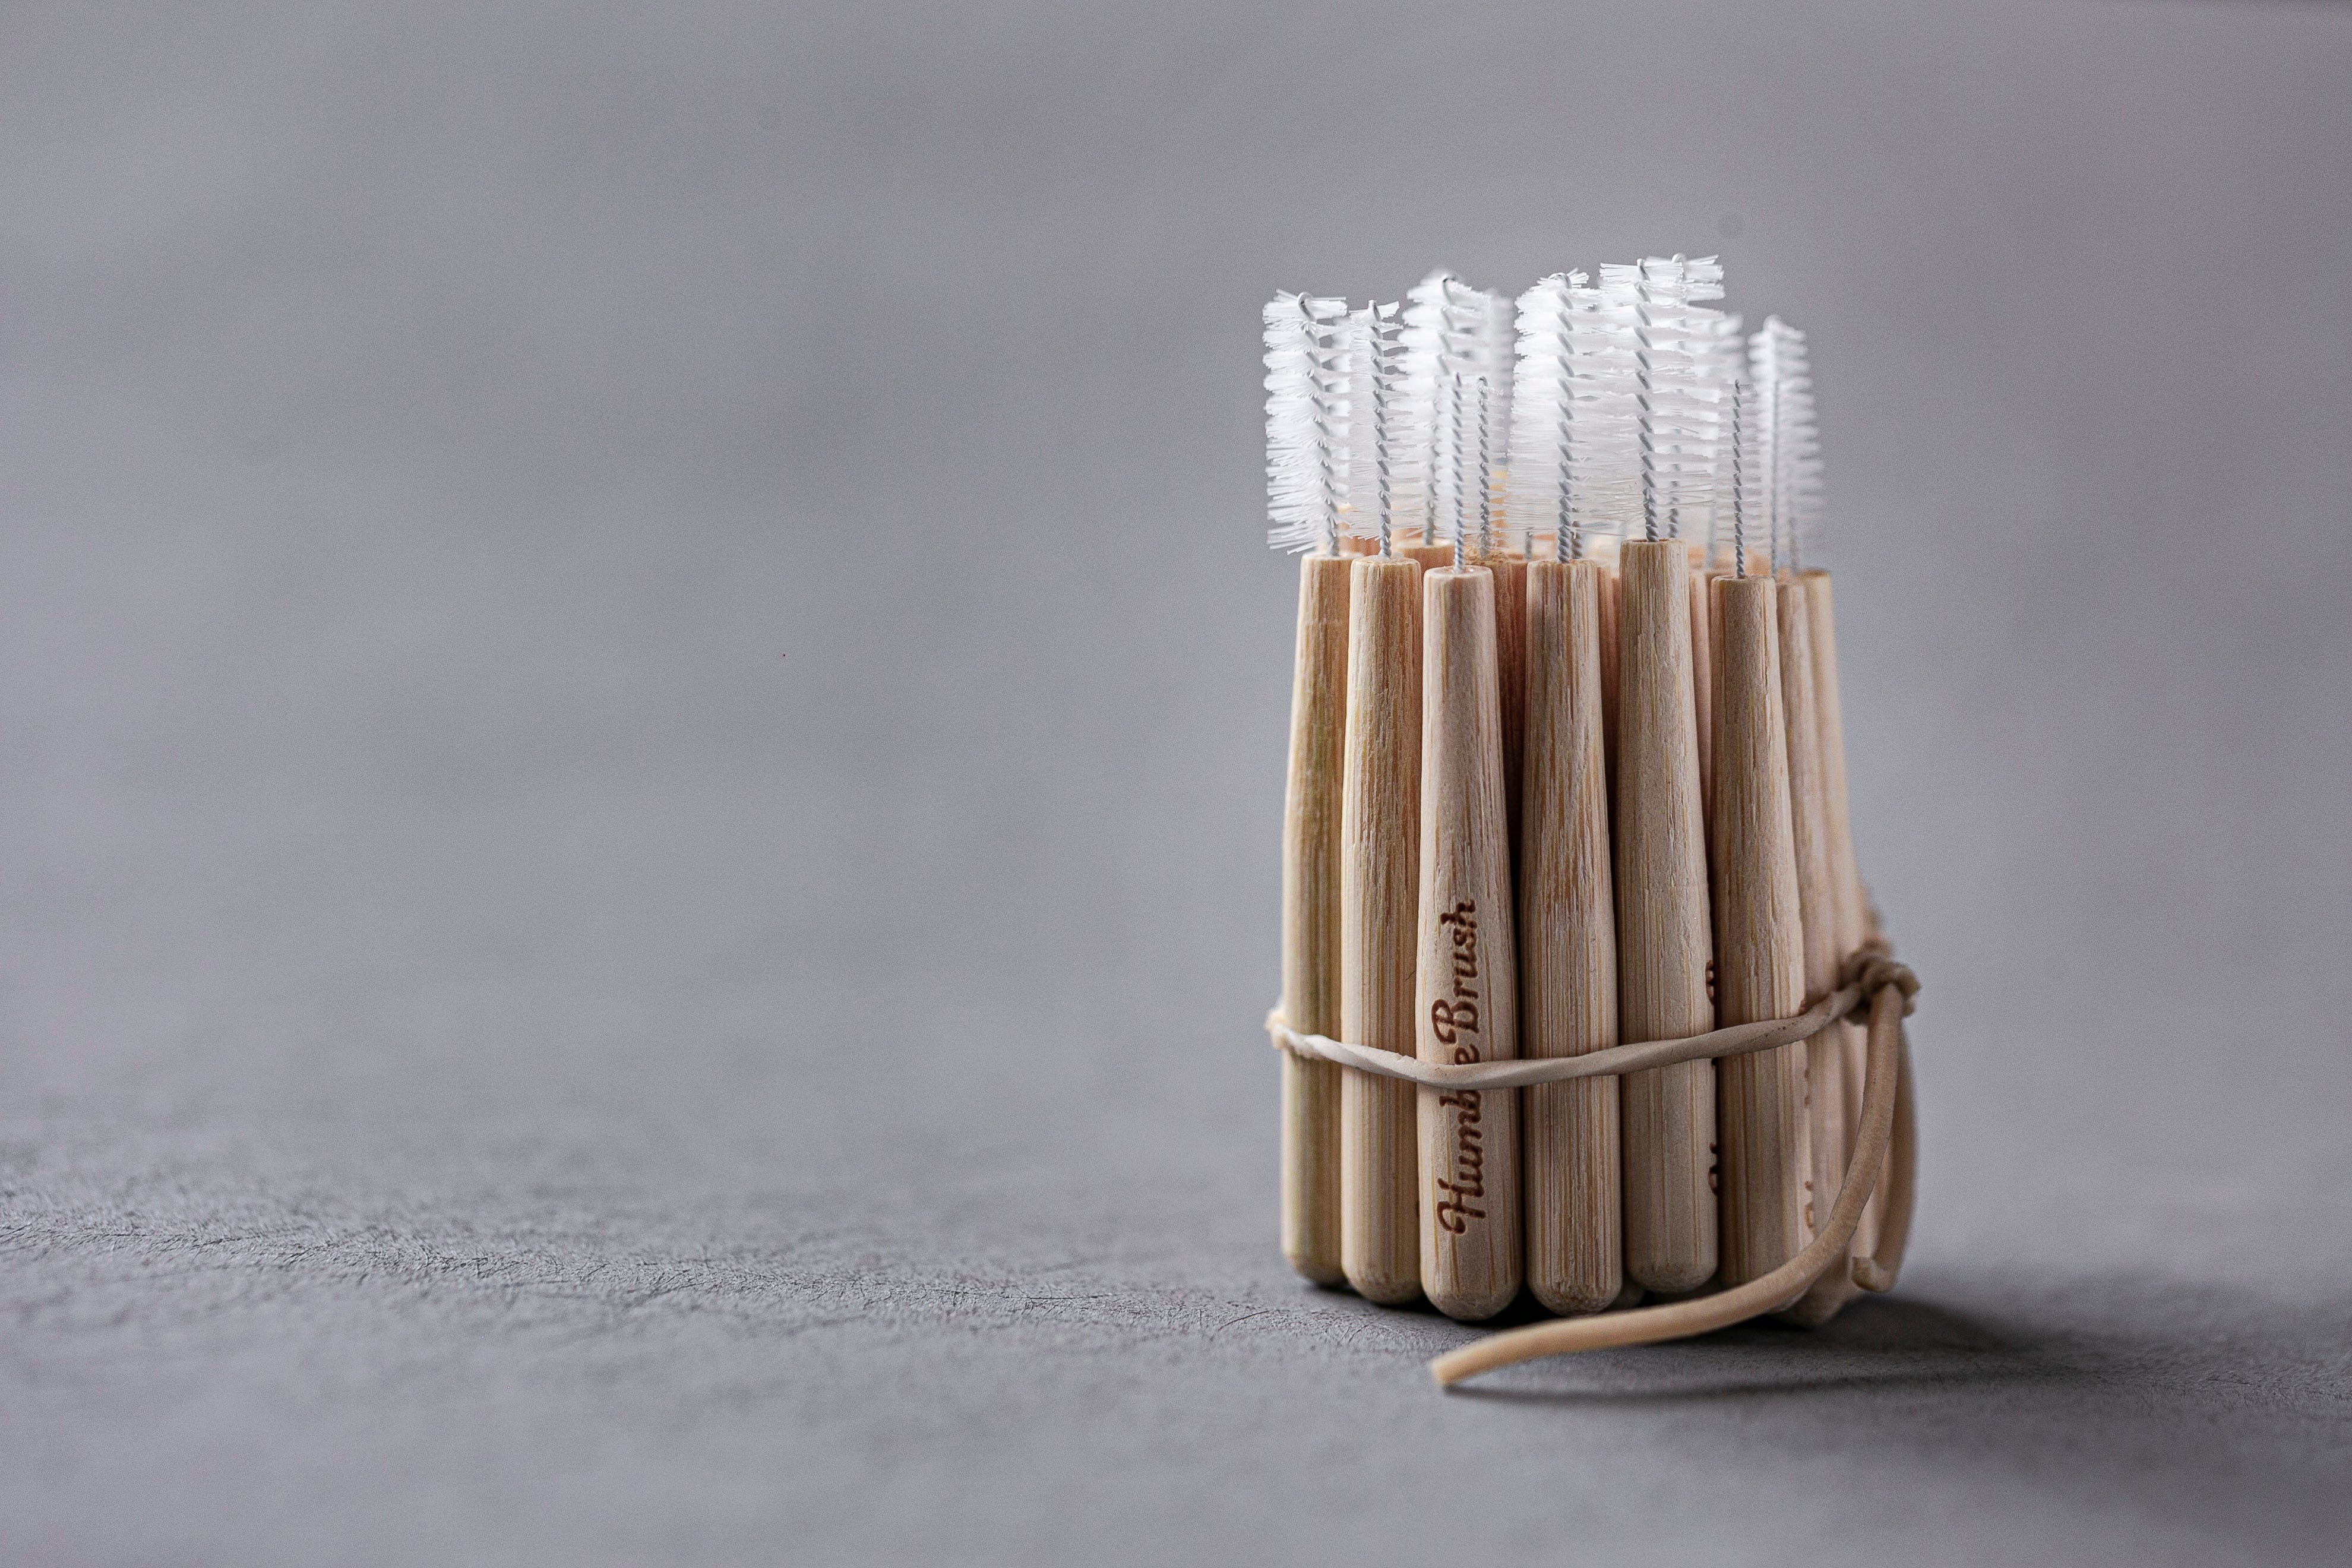 Bamboe interdental brush / rager diverse maten - Humble Brush